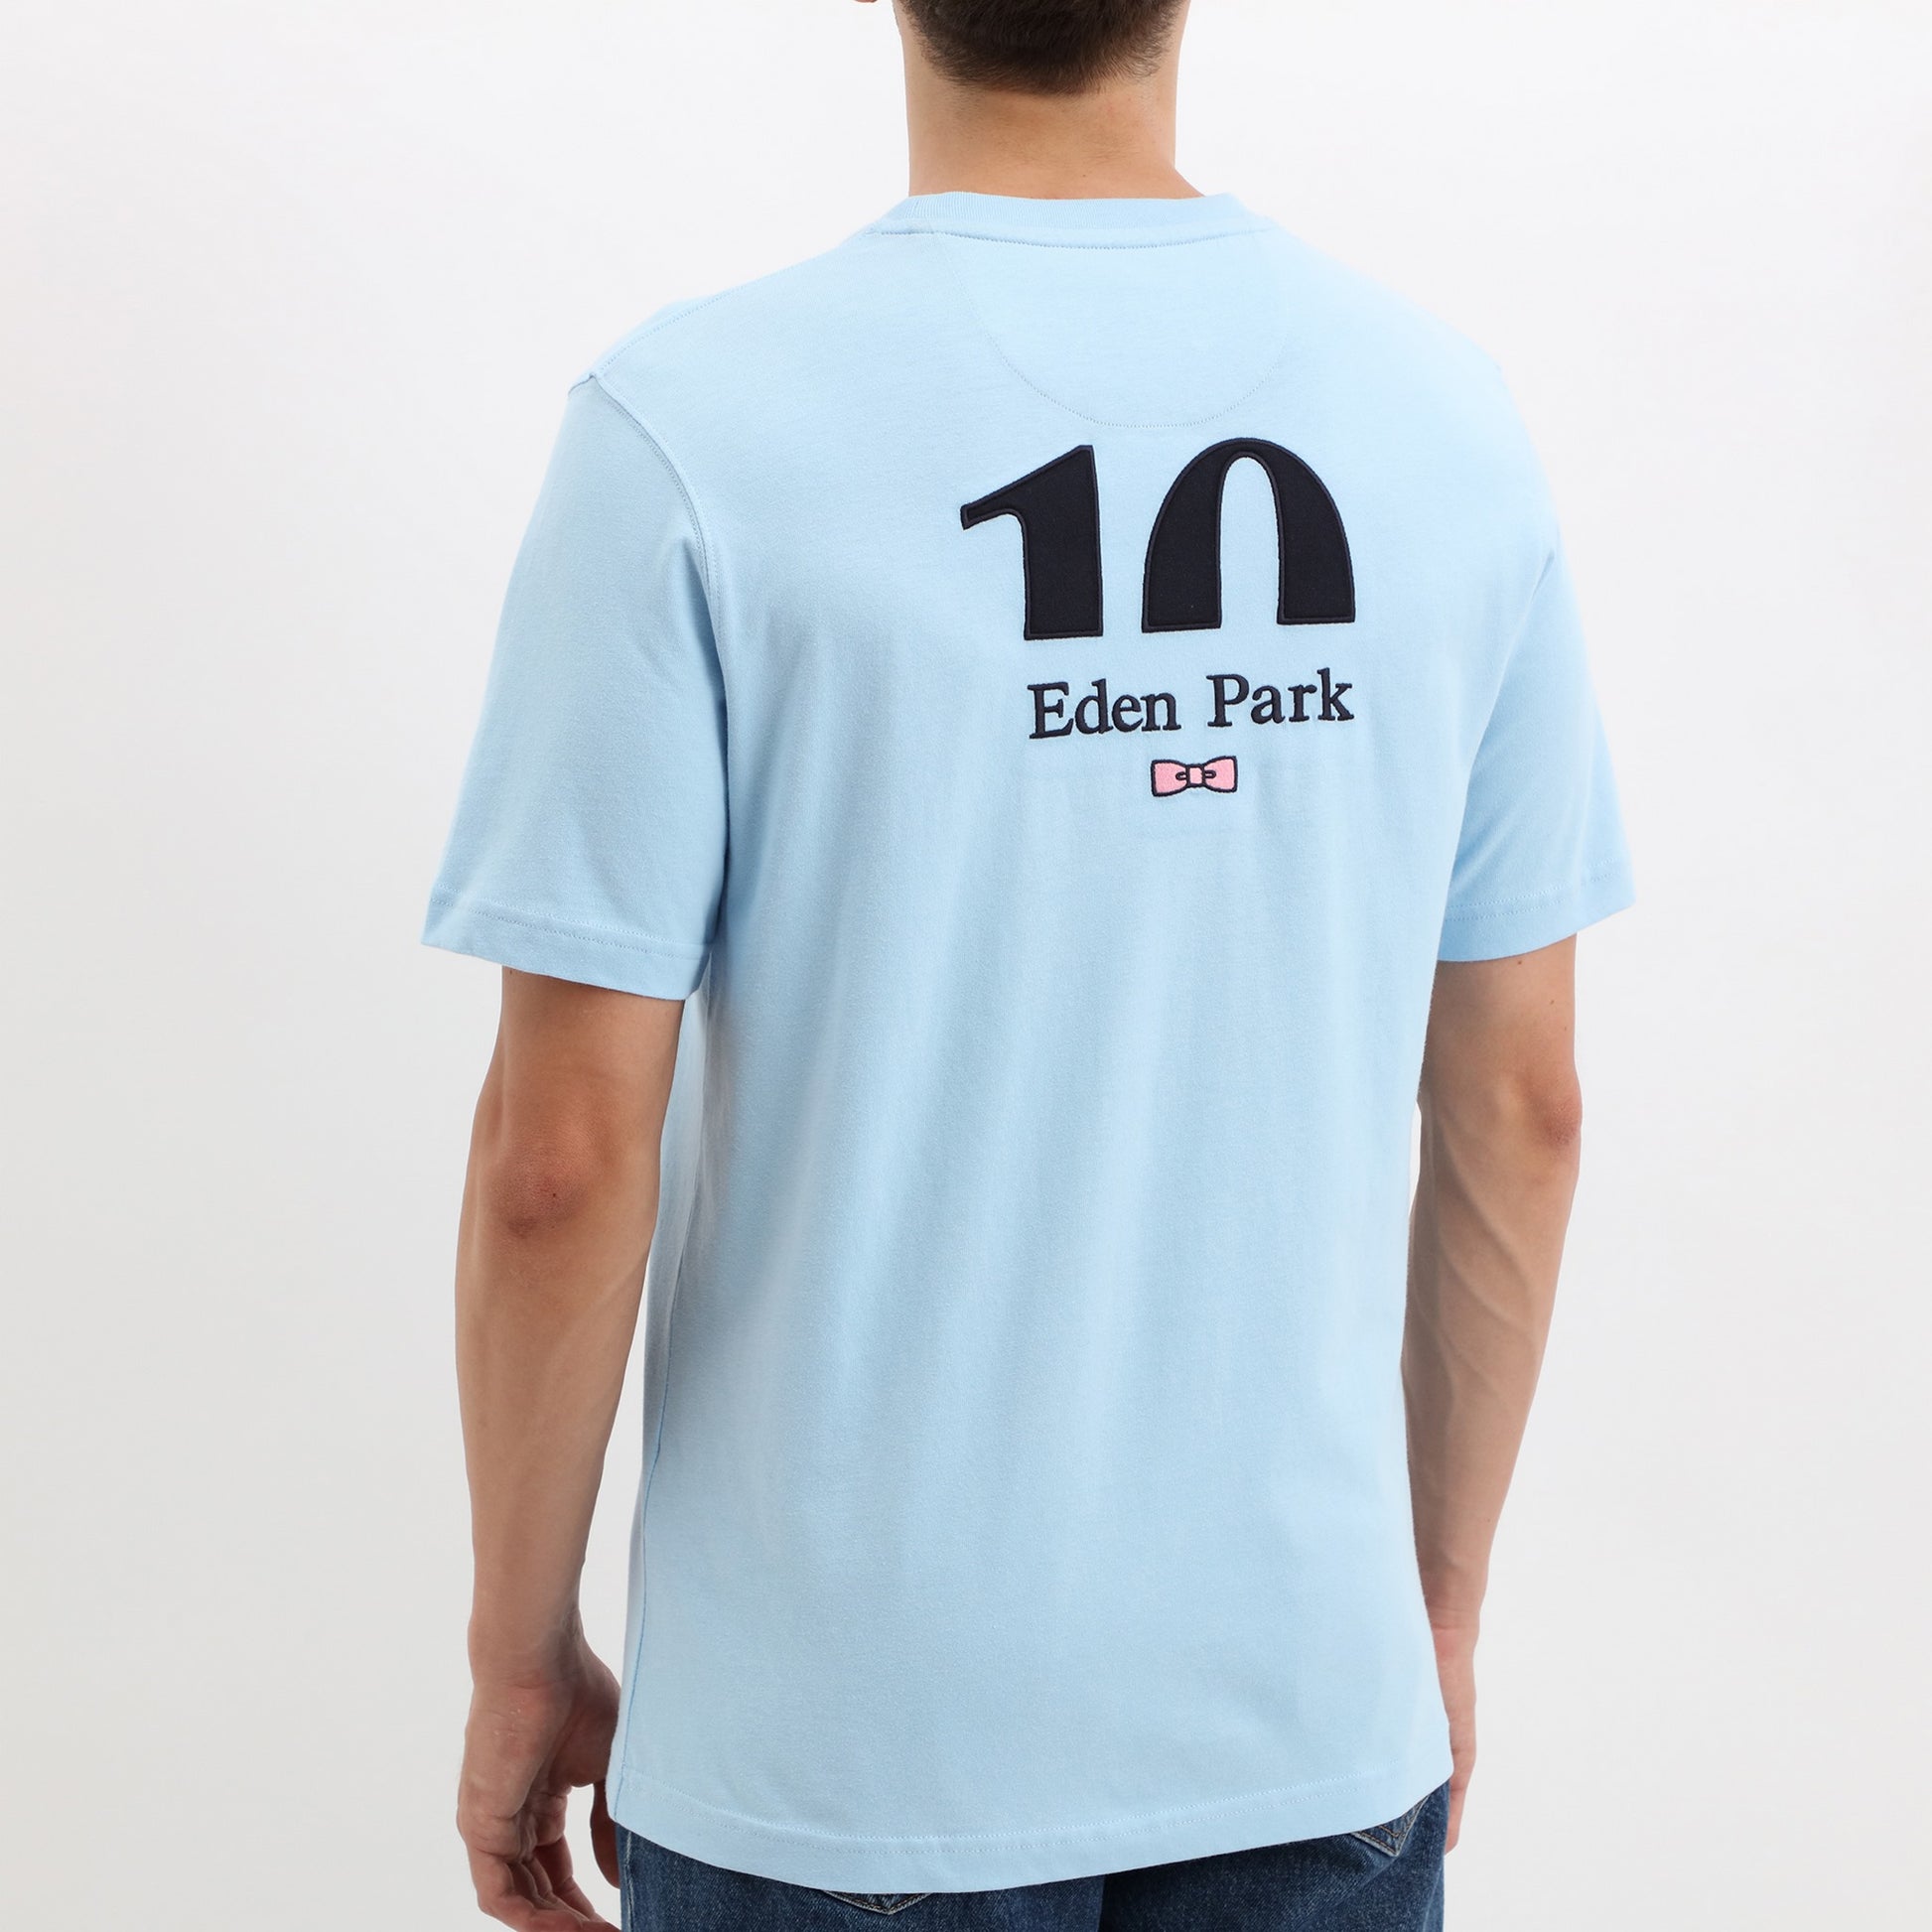 T-shirt noir à broderie nœud dos – Eden Park